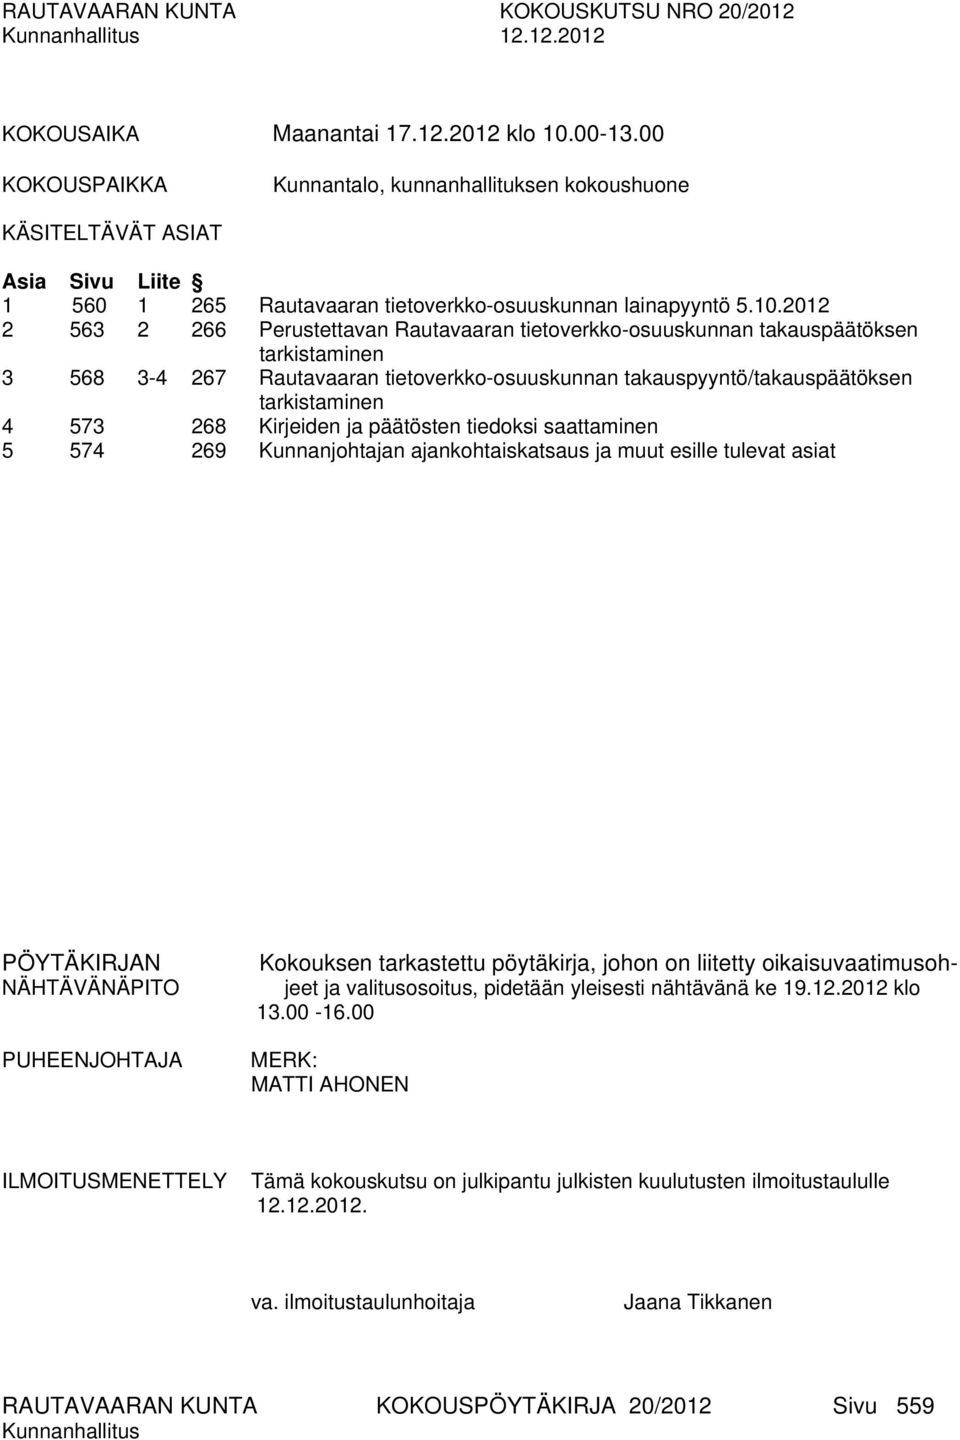 2012 2 563 2 266 Perustettavan Rautavaaran tietoverkko-osuuskunnan takauspäätöksen tarkistaminen 3 568 3-4 267 Rautavaaran tietoverkko-osuuskunnan takauspyyntö/takauspäätöksen tarkistaminen 4 573 268